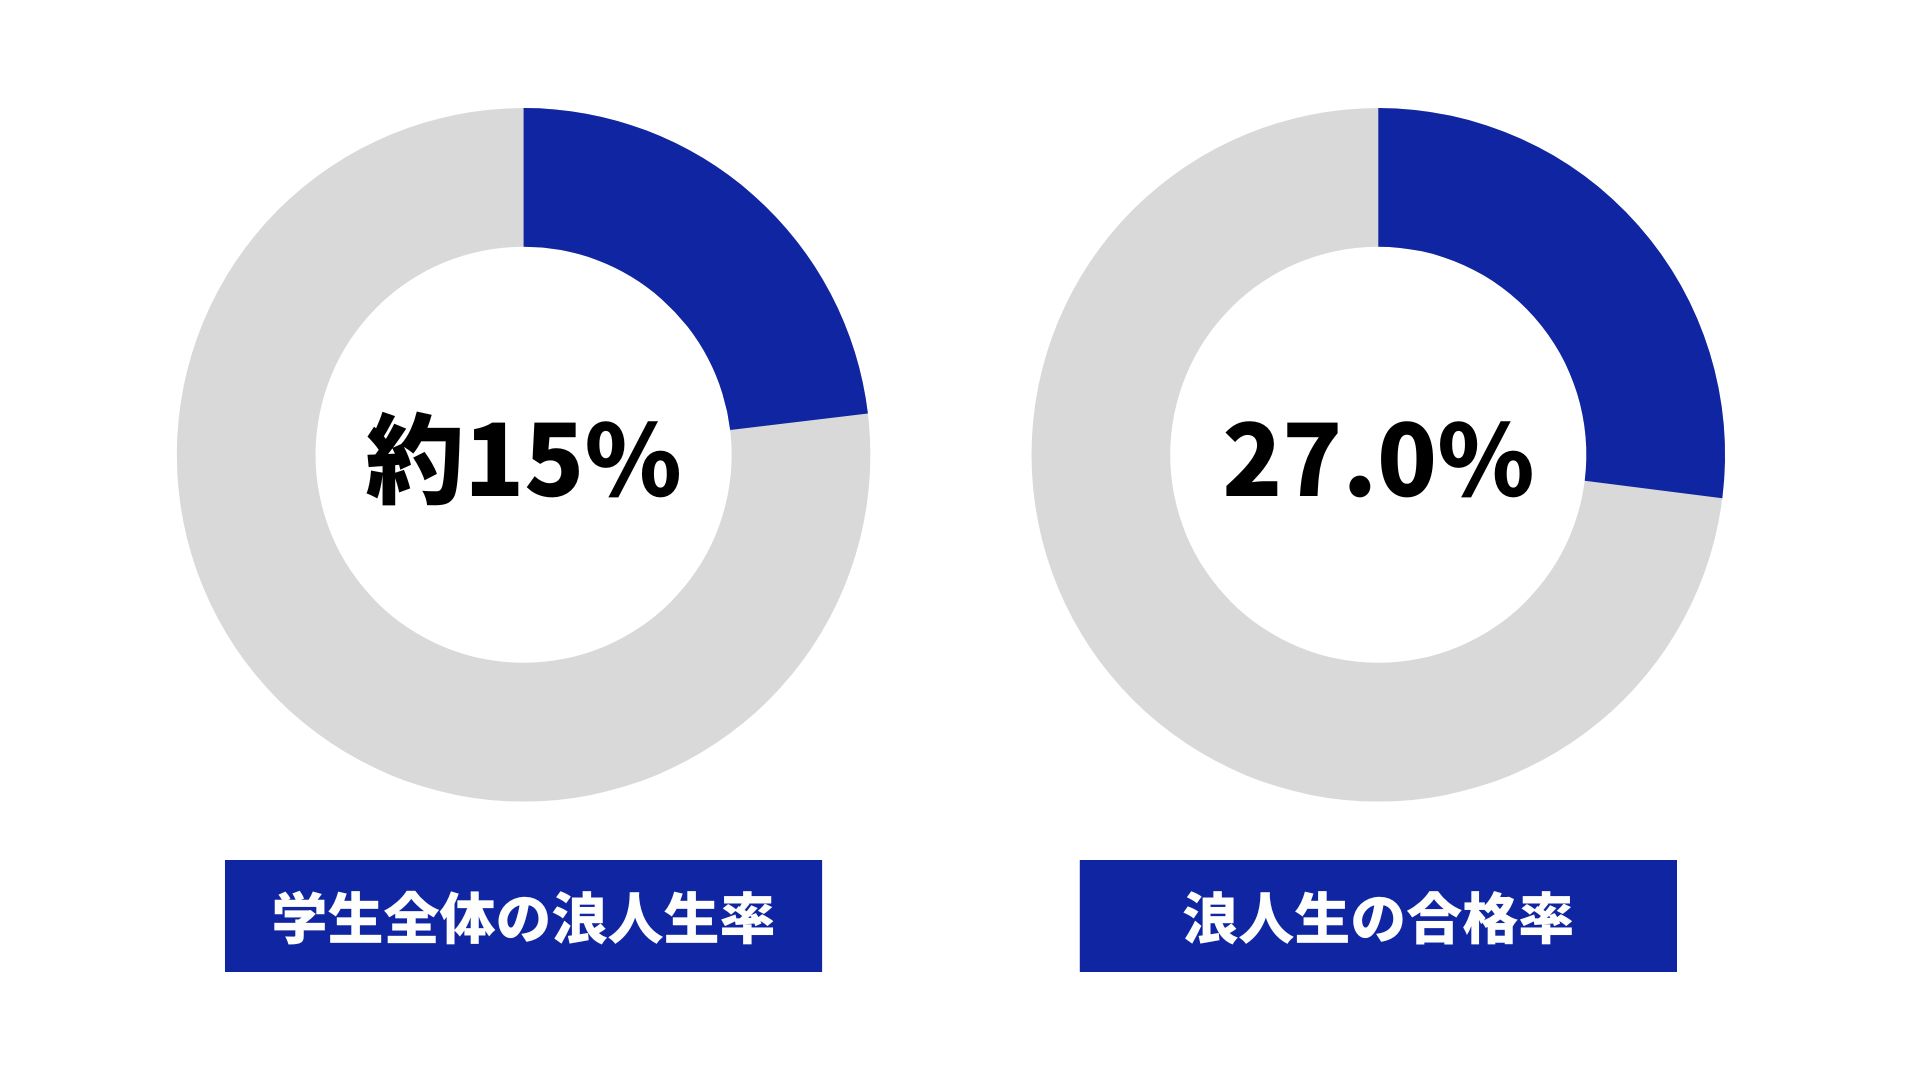 熊本大学の浪人生の割合